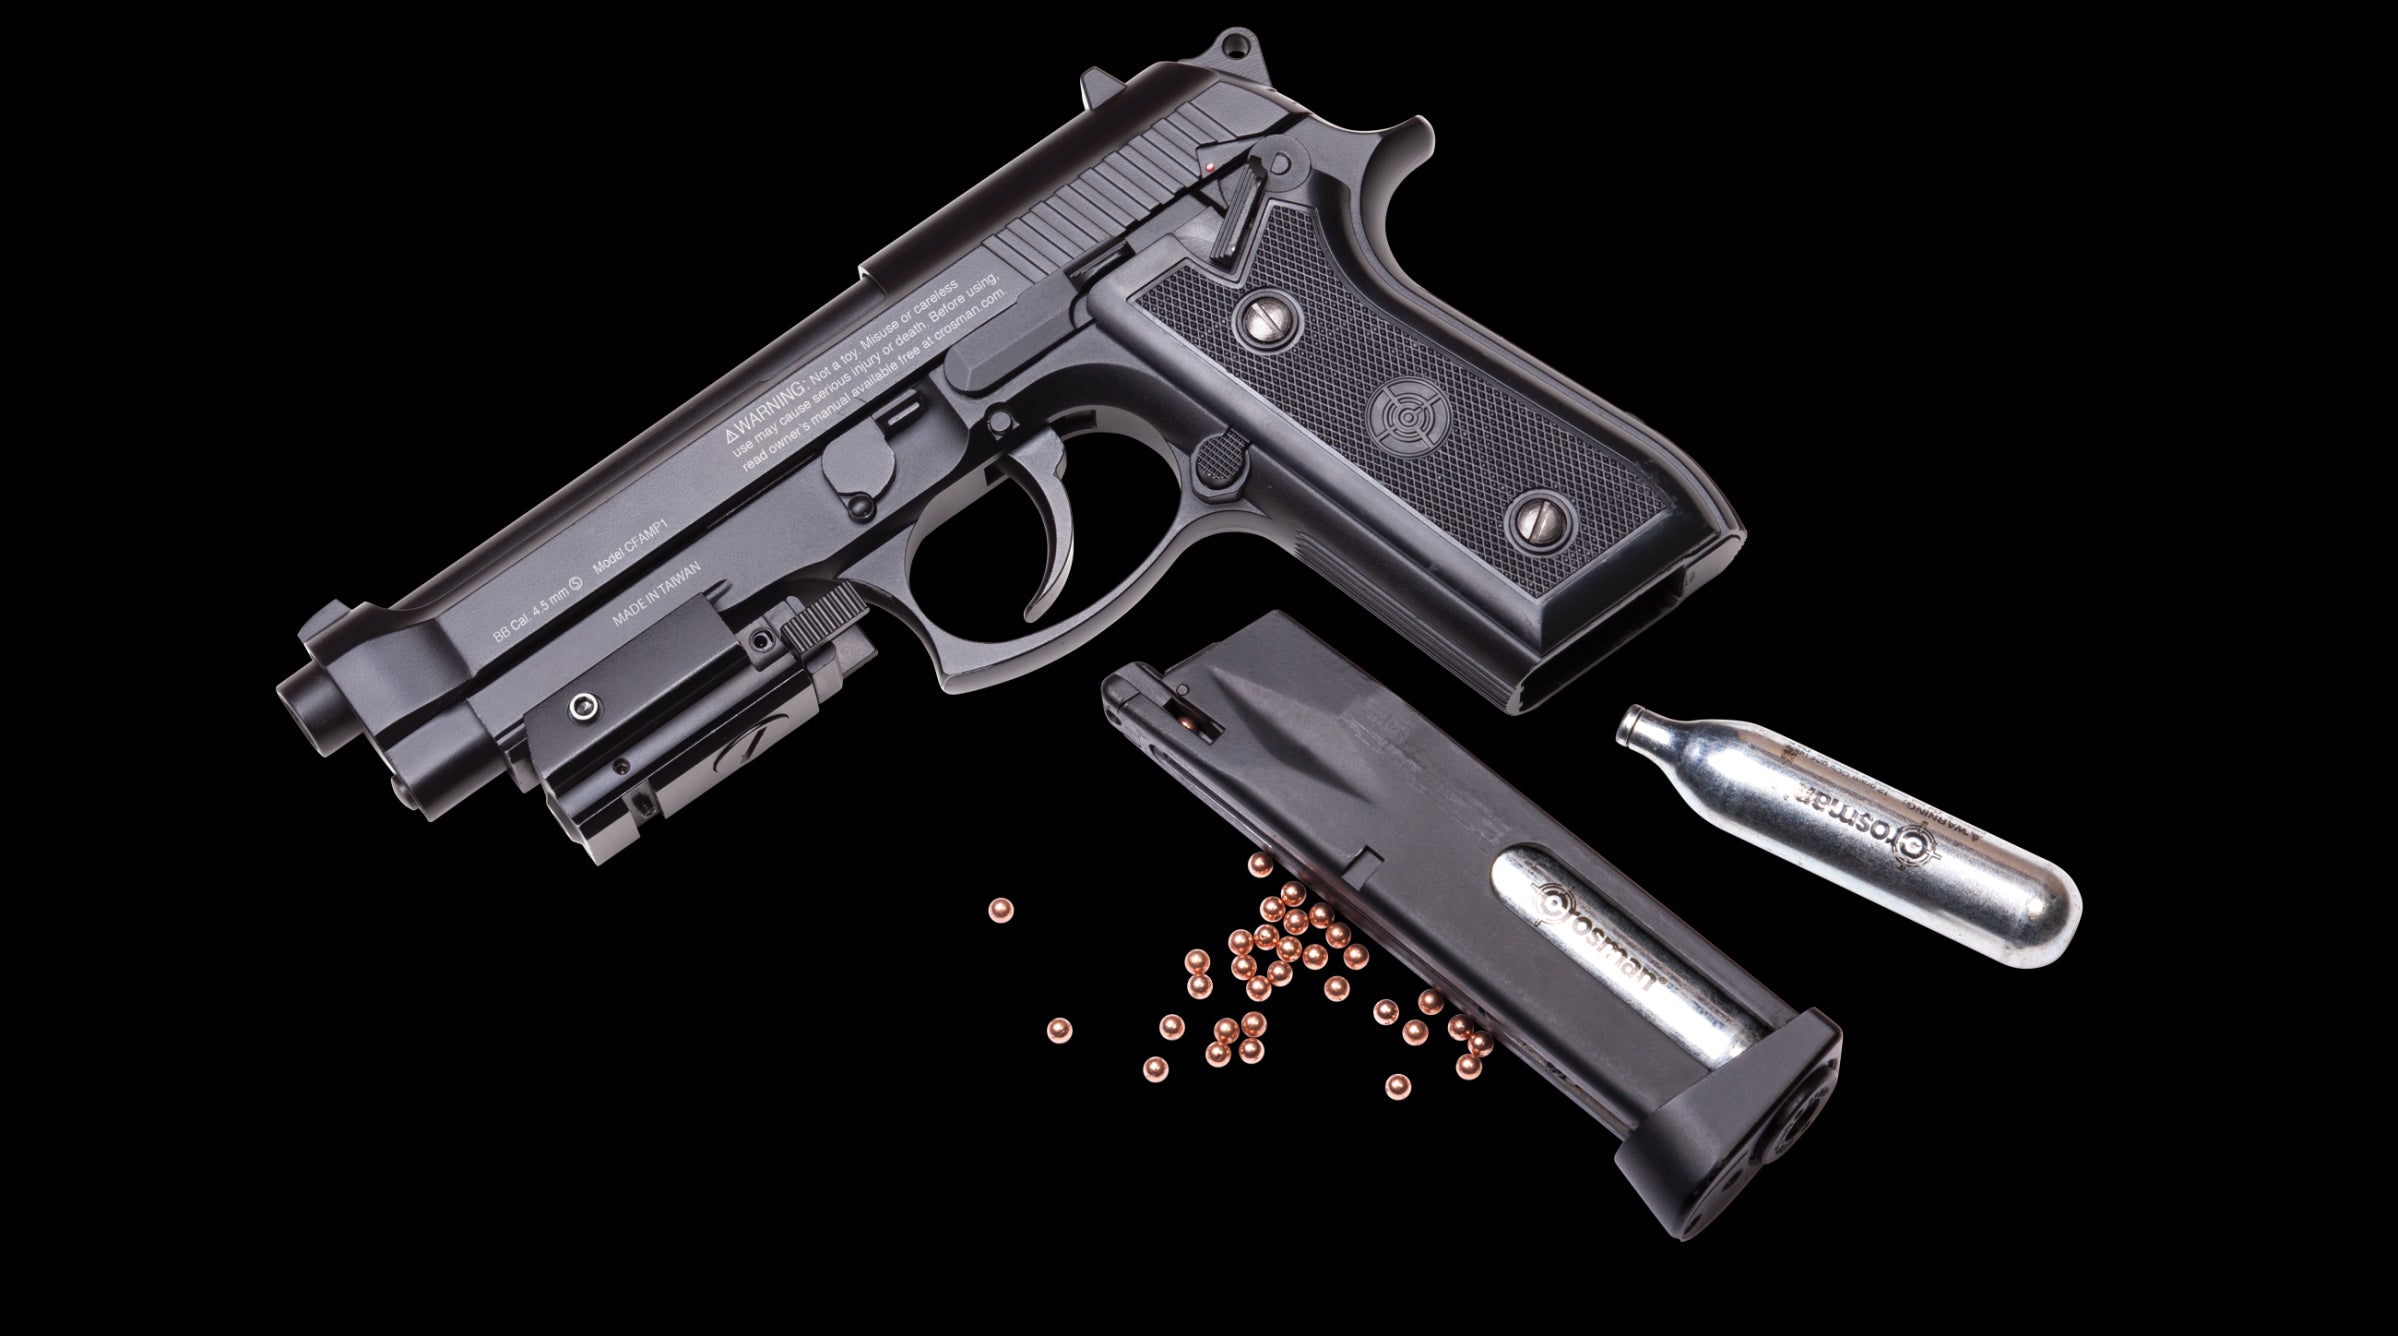 Pistola de aire Crosman P1 Automática Blowback Mira Laser 400fps